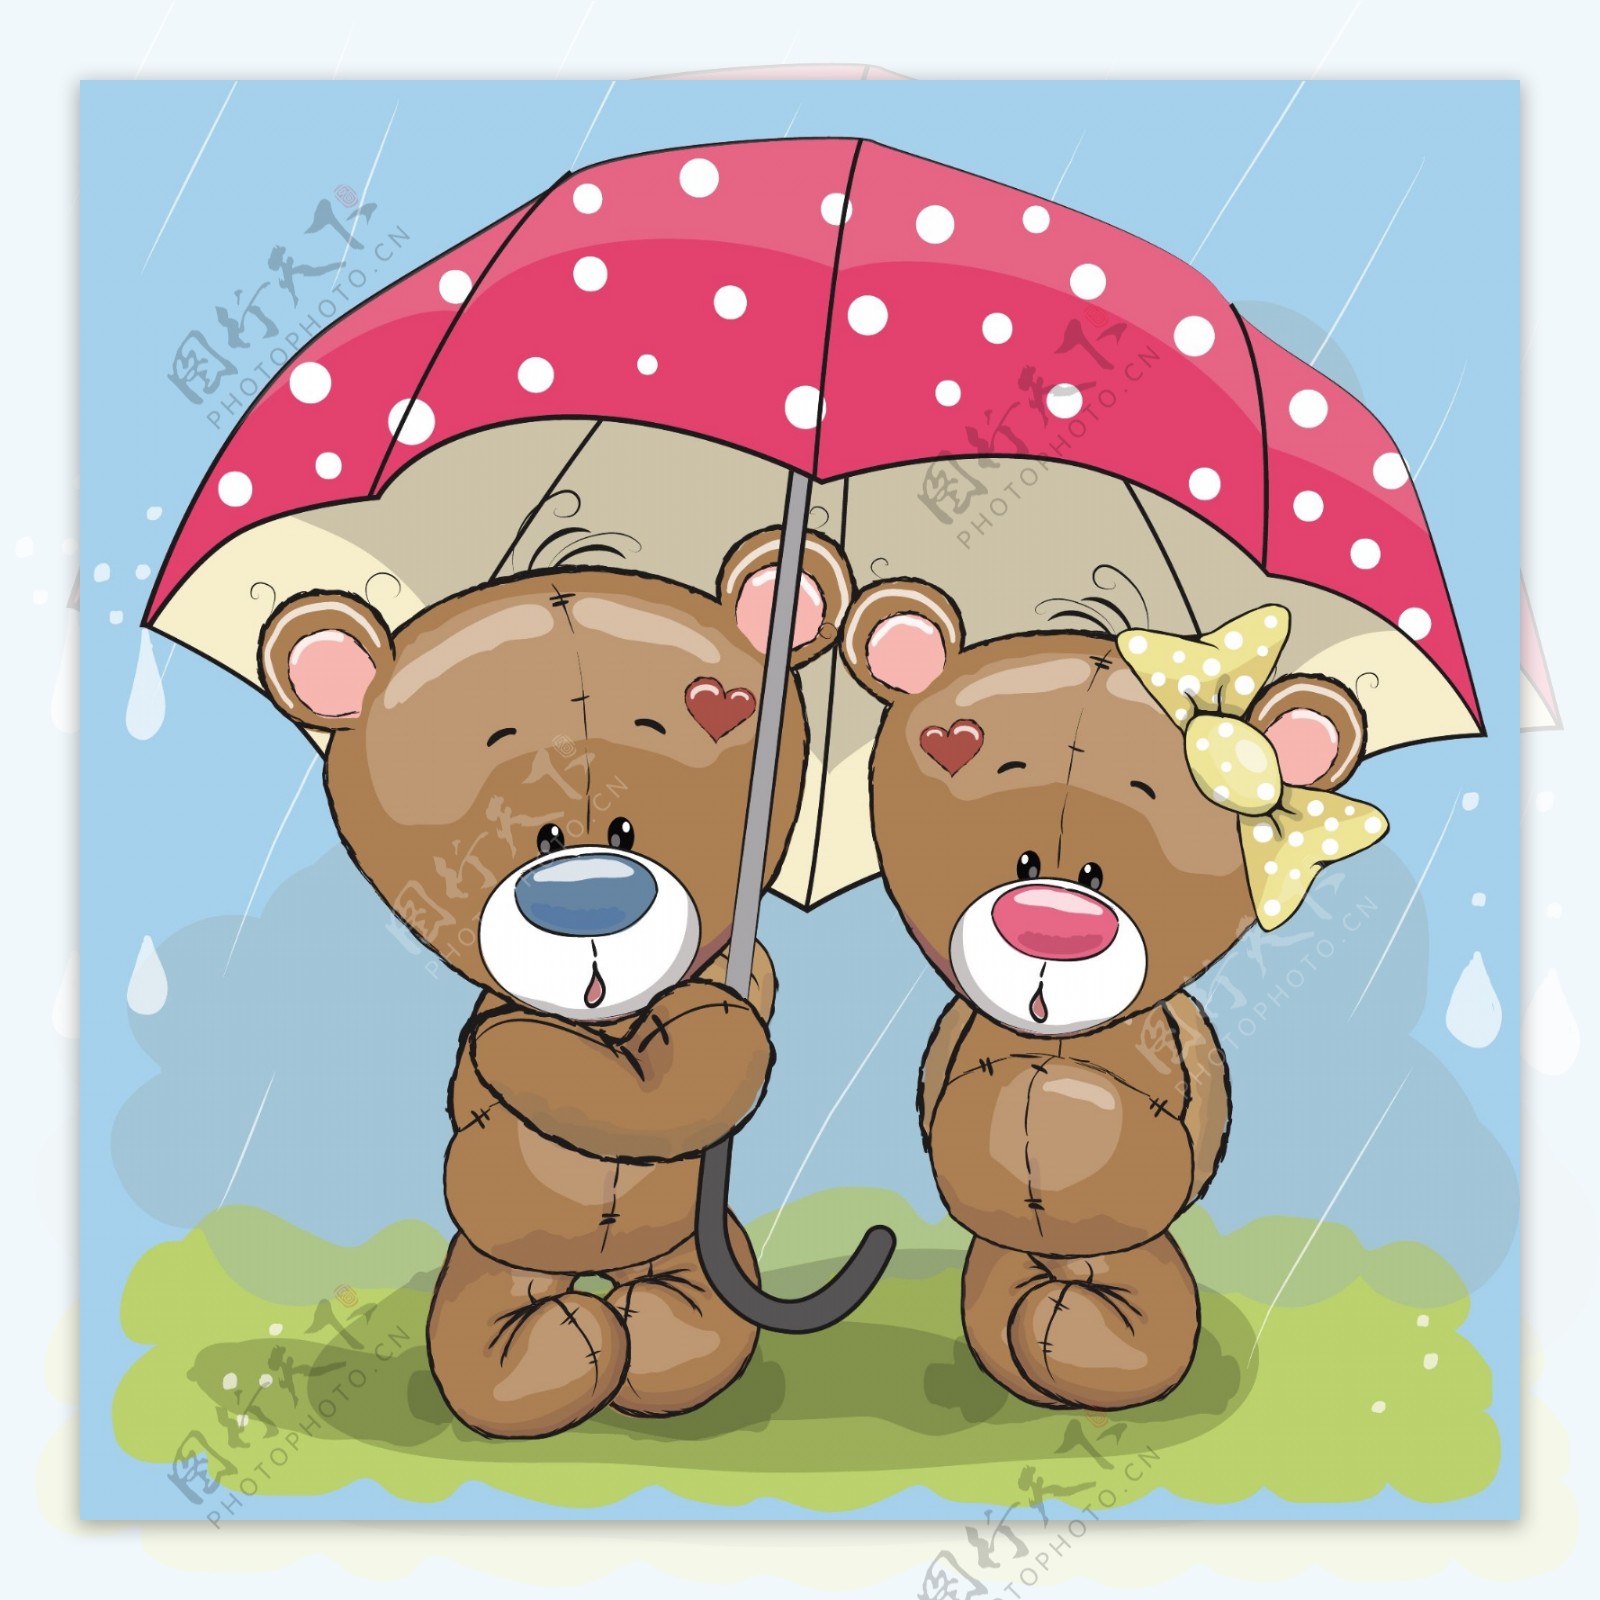 雨伞下躲雨的两只小熊